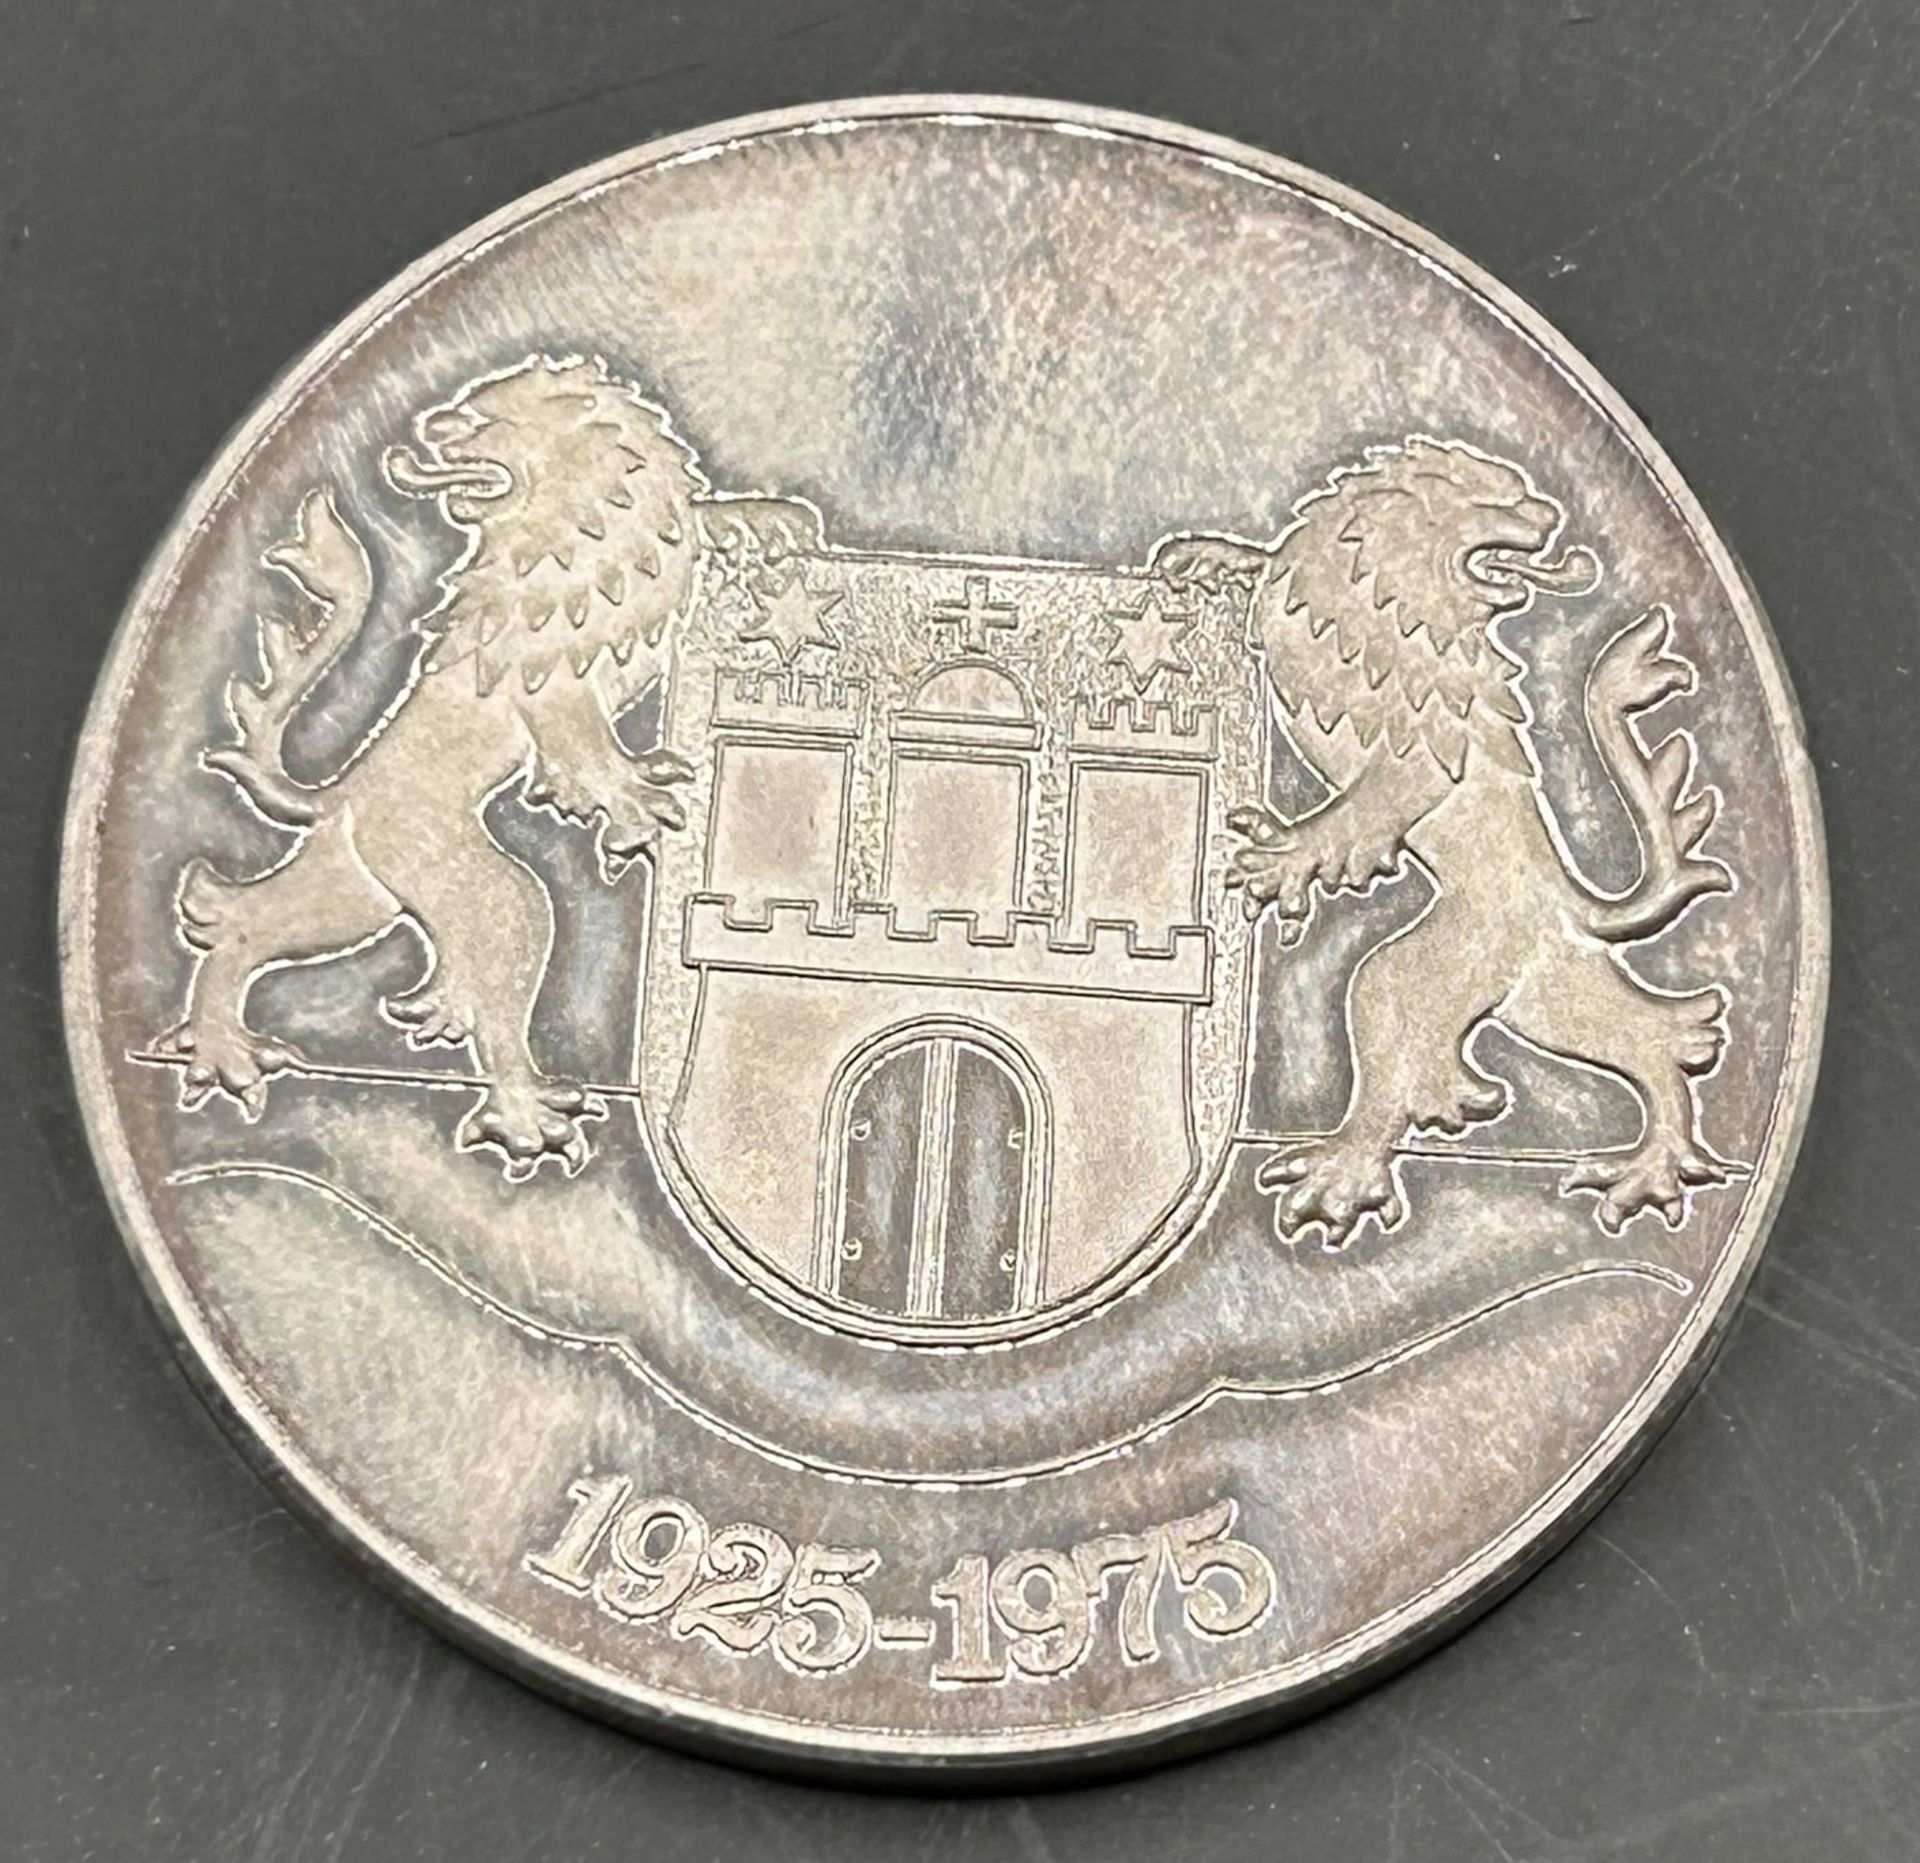 Silbermedaille der Volksfürsorge Deutsche Sachversicherung AG, 1975, D-3,5 cm, 20 gr - Image 2 of 2